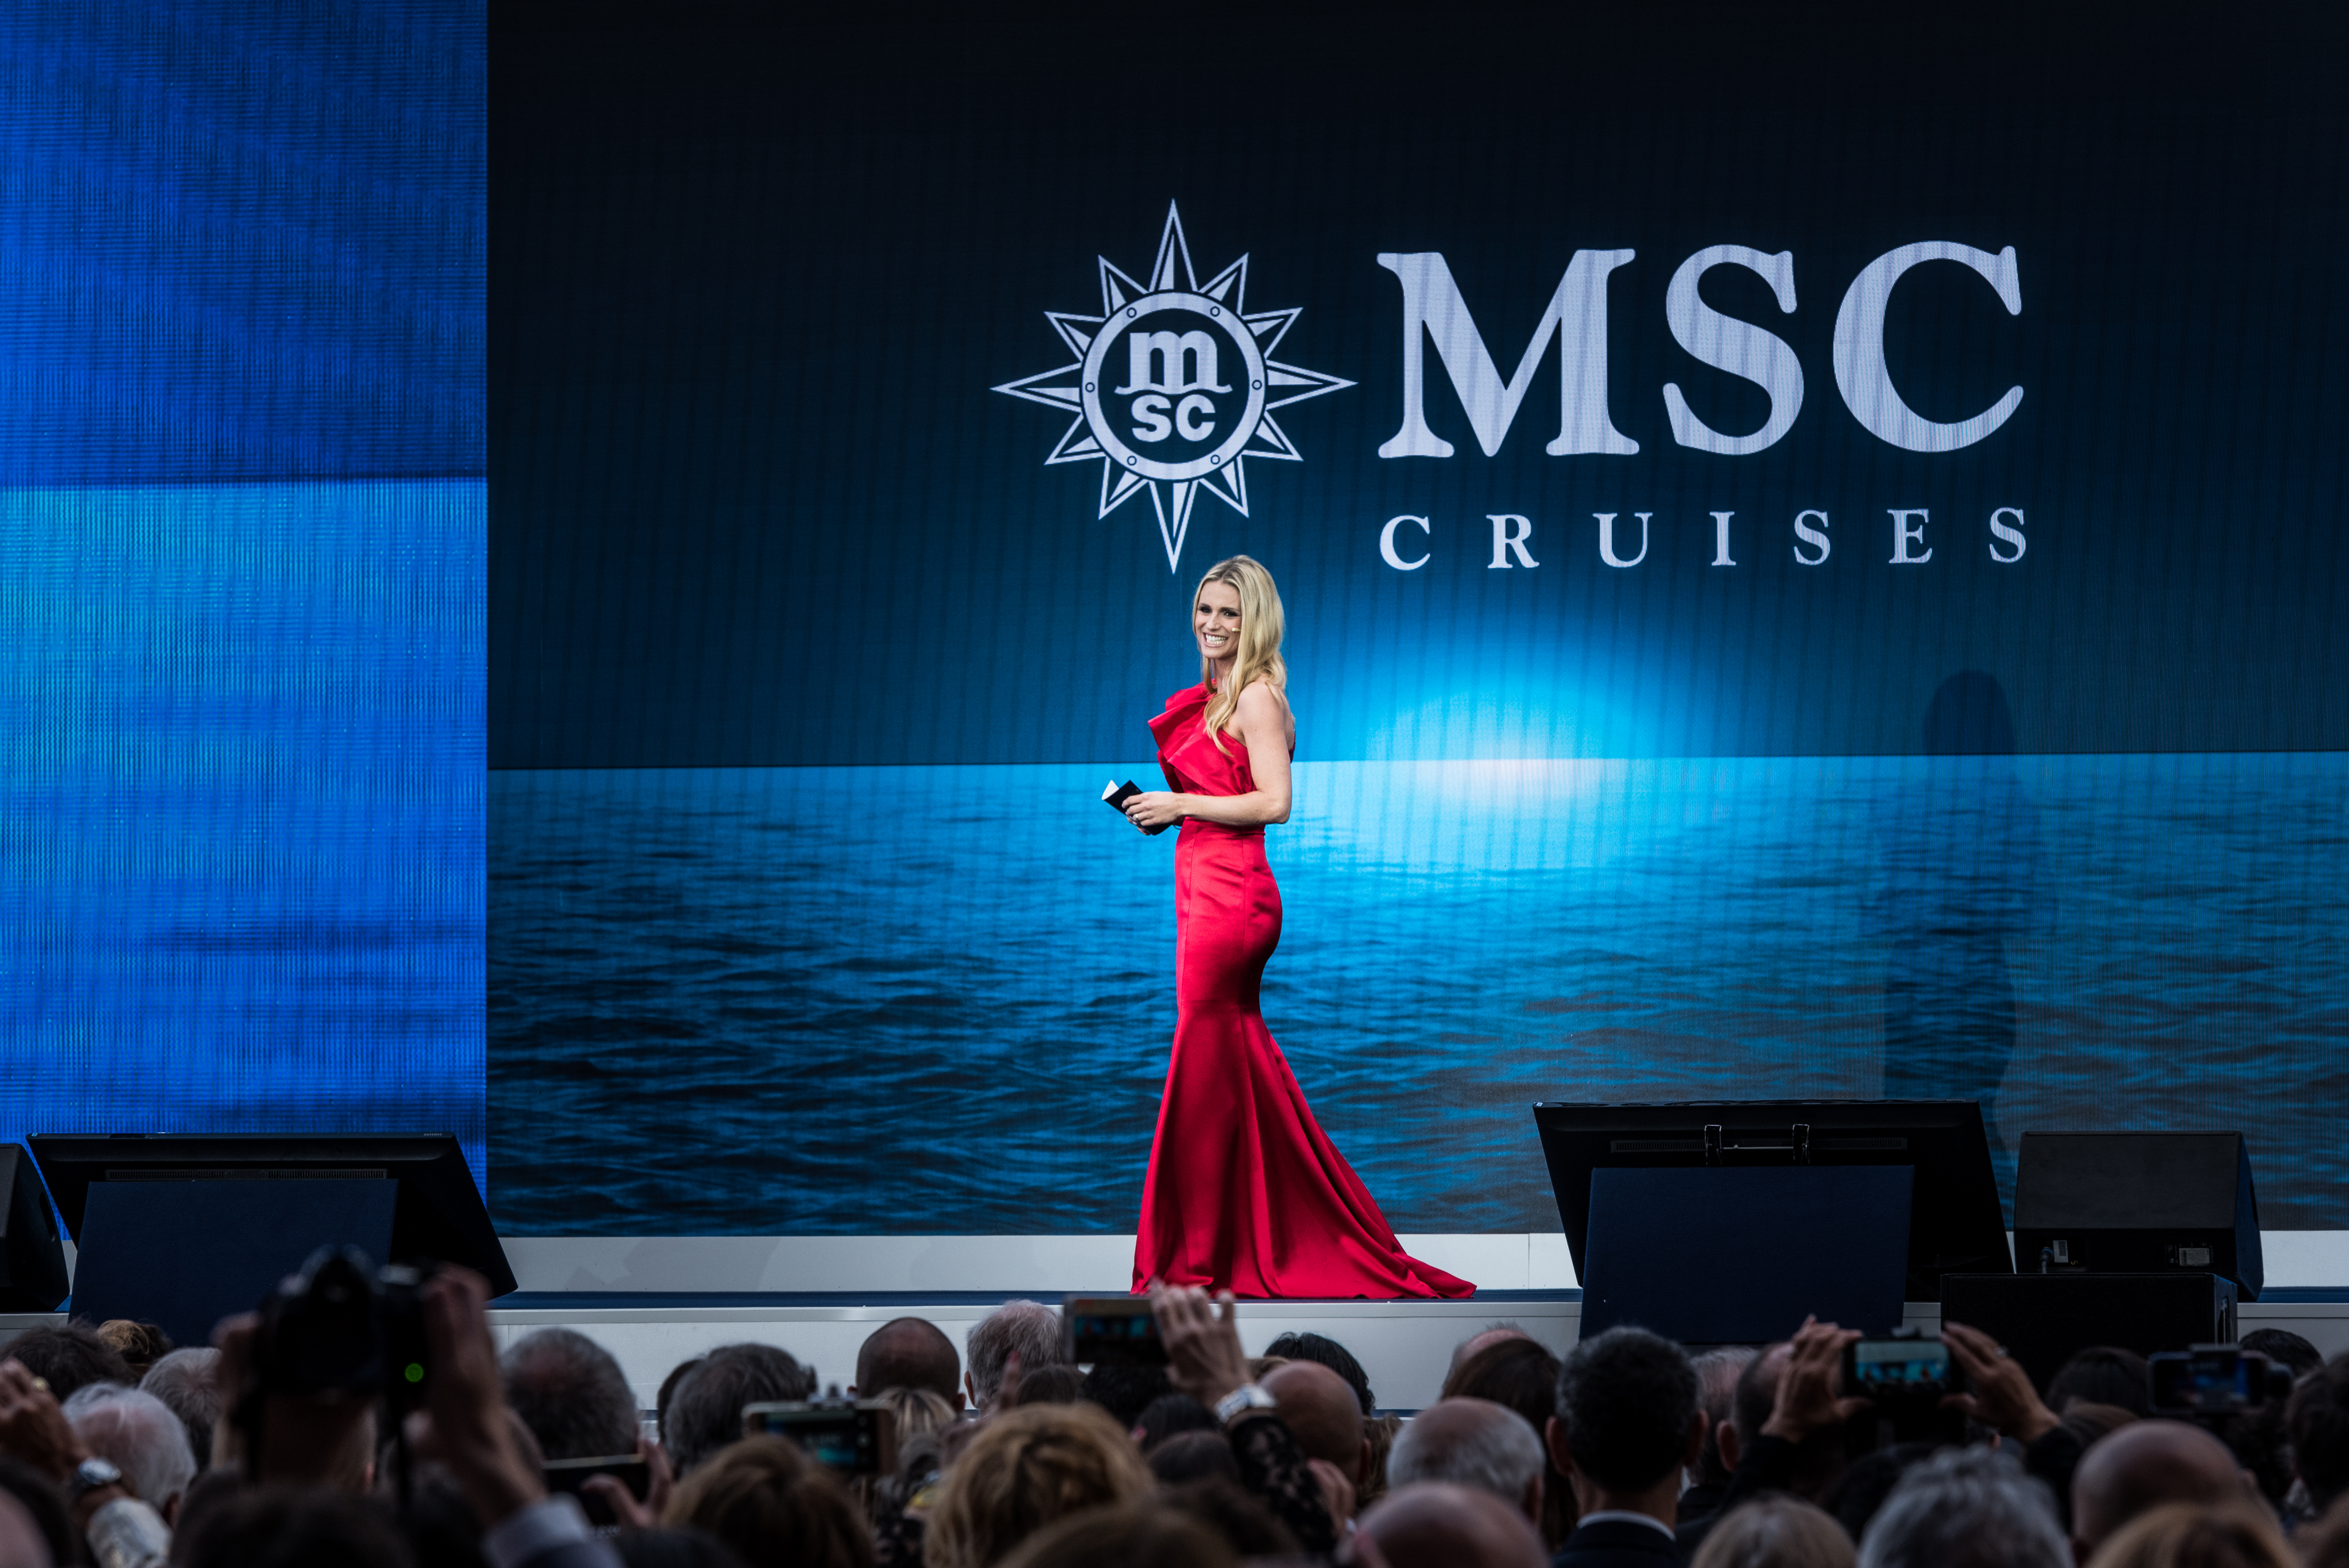 Bei der Taufe der MSC Grandiosa im Hamburger Hafen am 9. November wird Michelle Hunziker  durch den glamourösen Abend führen.